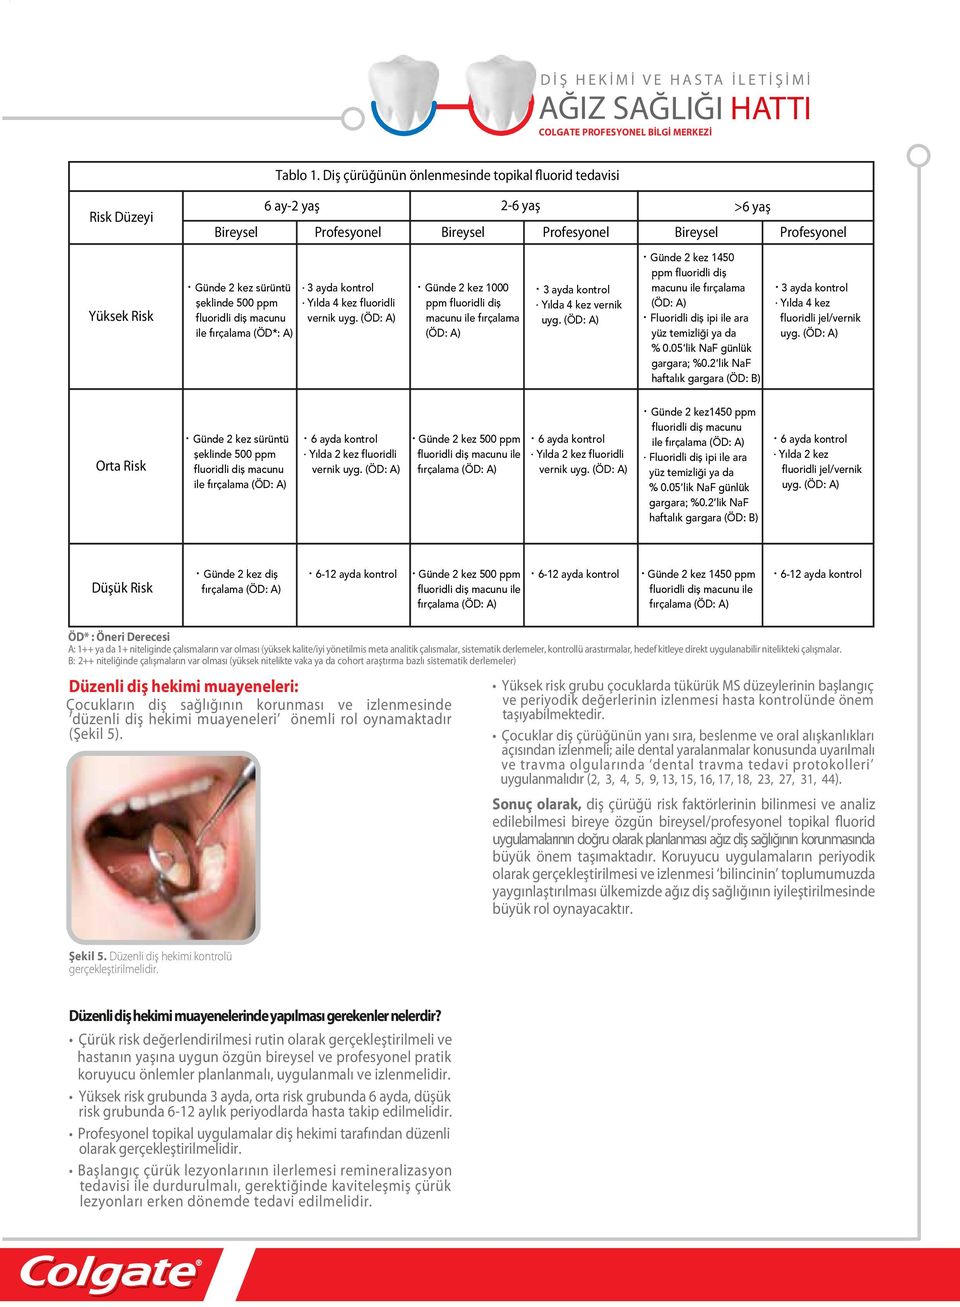 ppm fluoridli diş macunu ile fırçalama (ÖD*: A) 3 ayda kontrol Yılda 4 kez fluoridli vernik uyg.